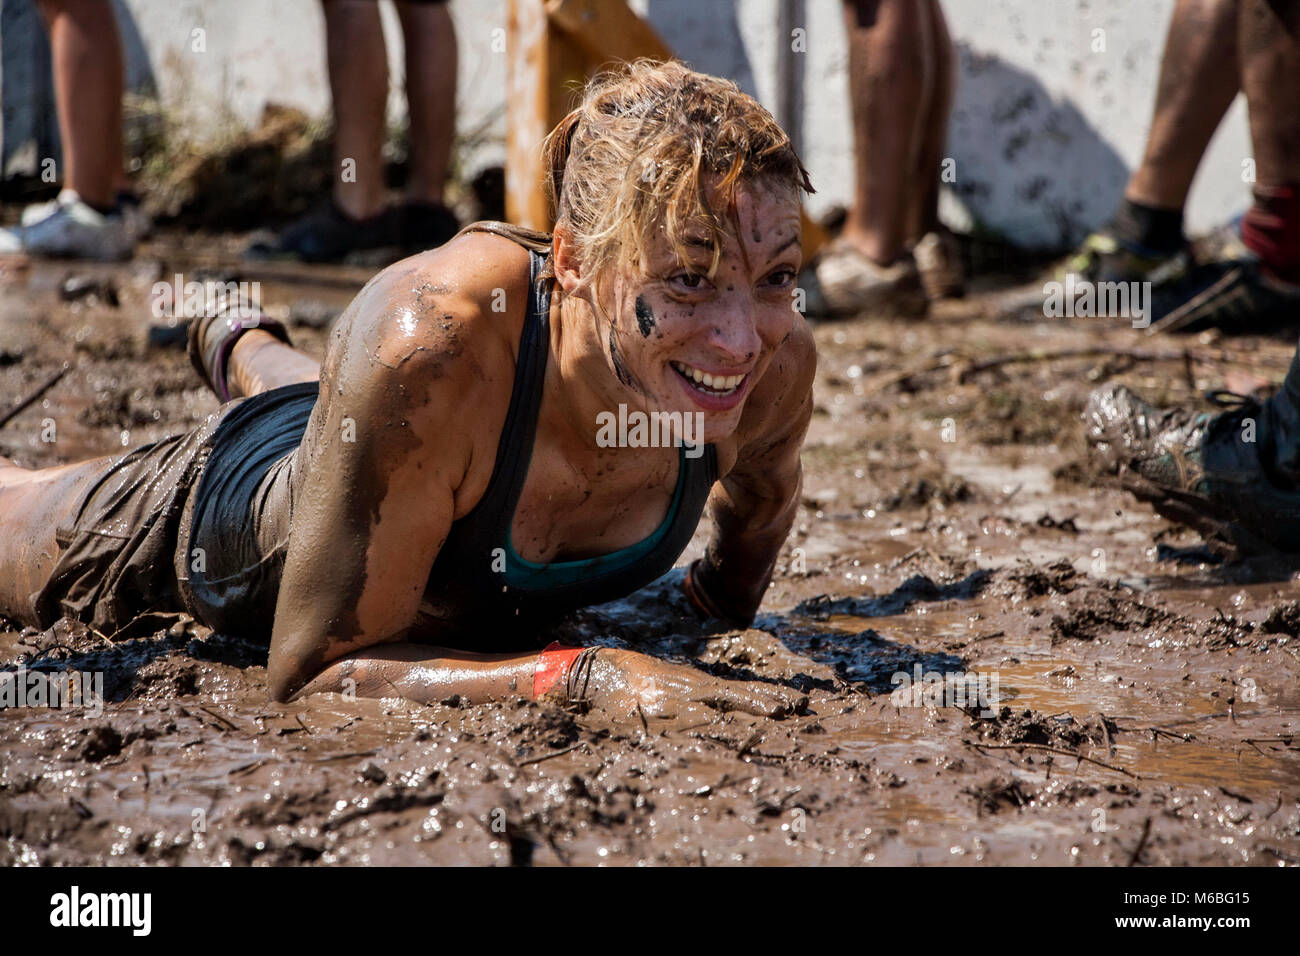 Mujer joven arrastrándose en el lodo; participación en deporte extremo, fuerza física desafío Foto de stock